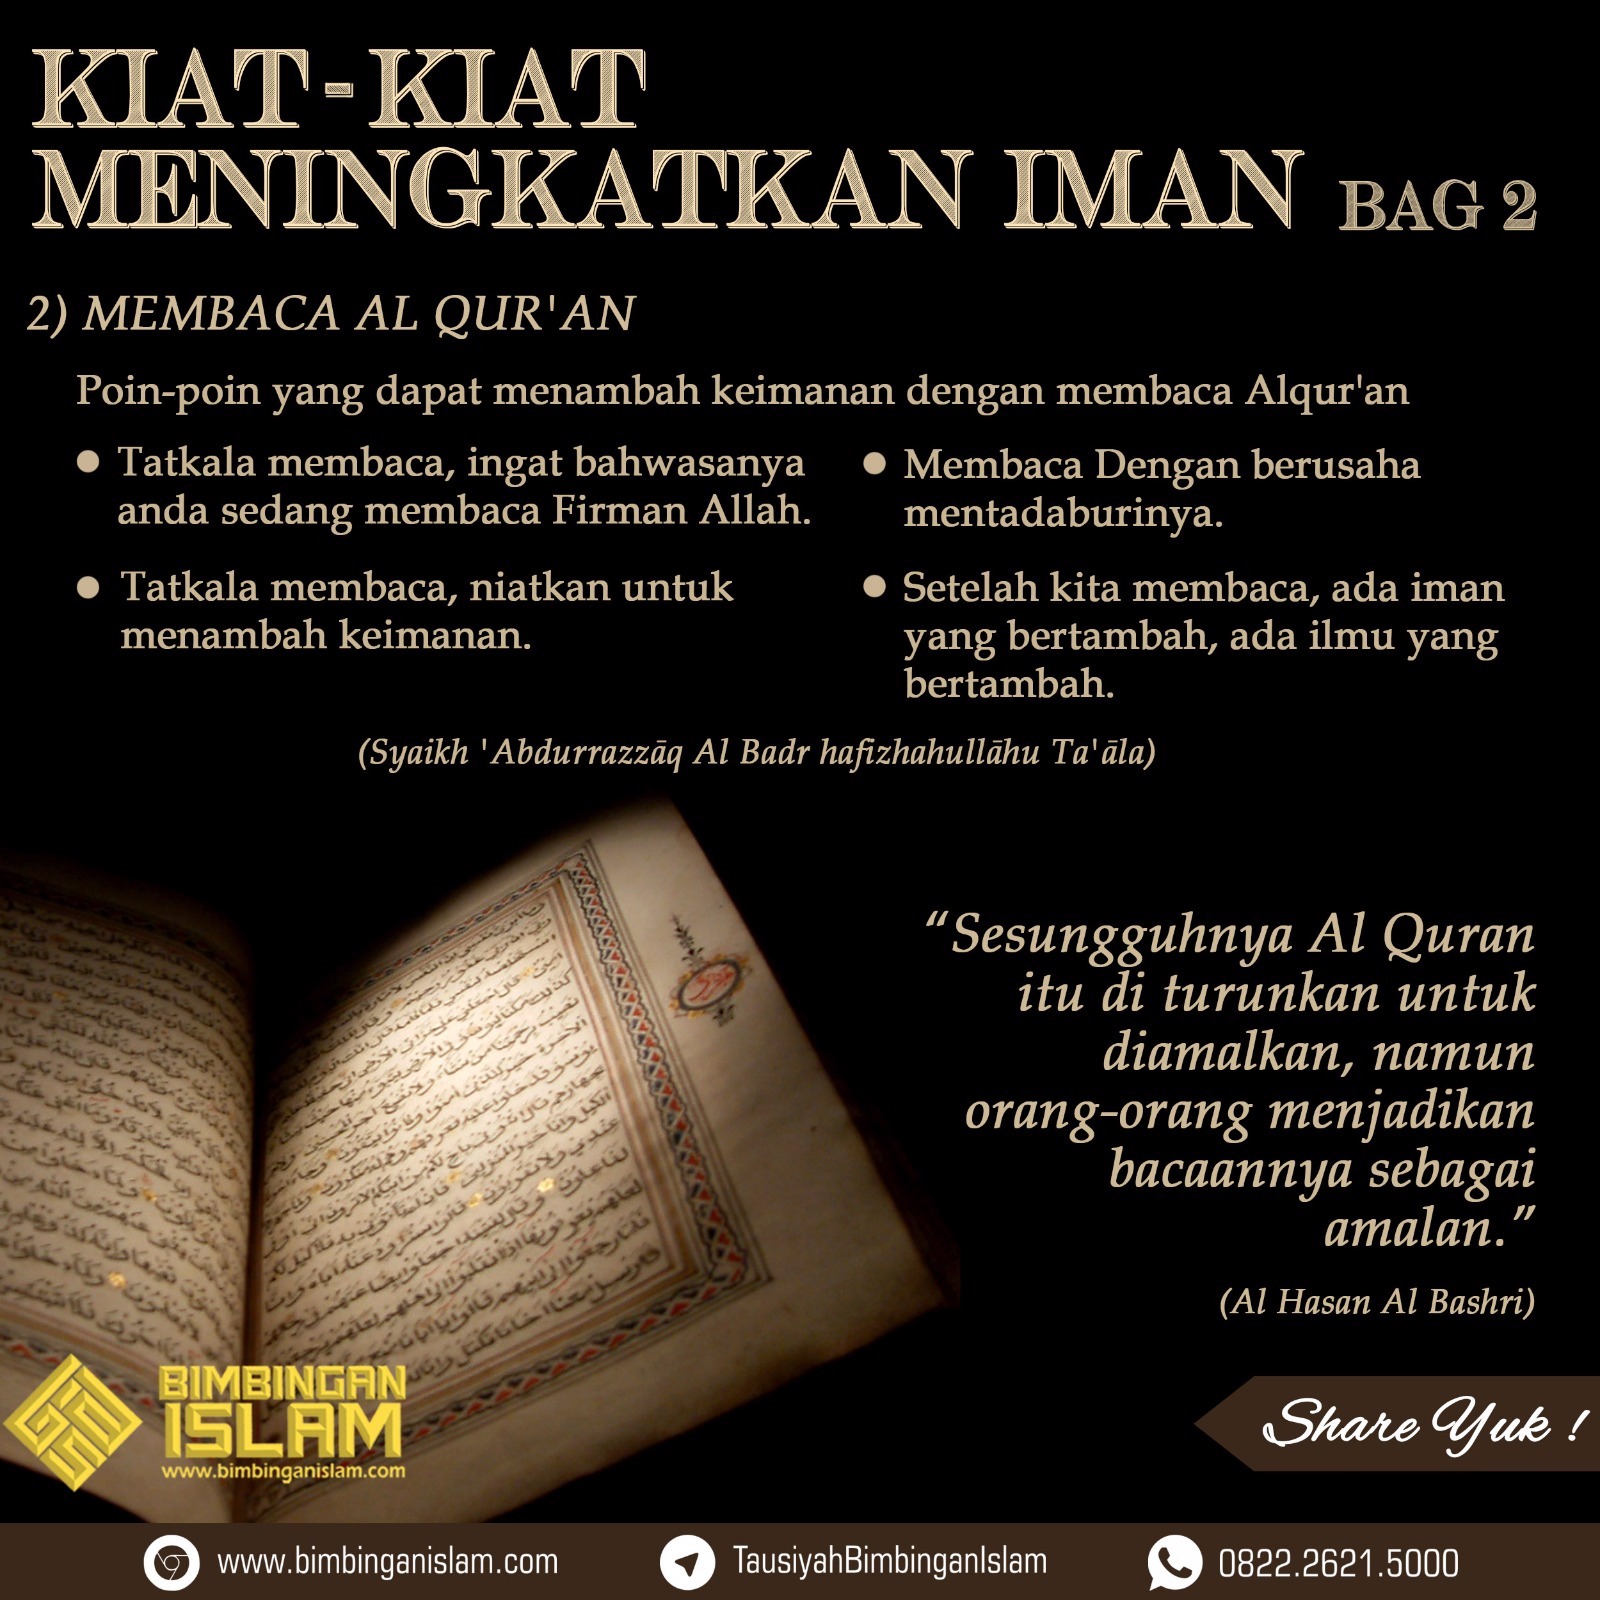 Kata Kata Semangat Membaca Al Quran Cikimmcom